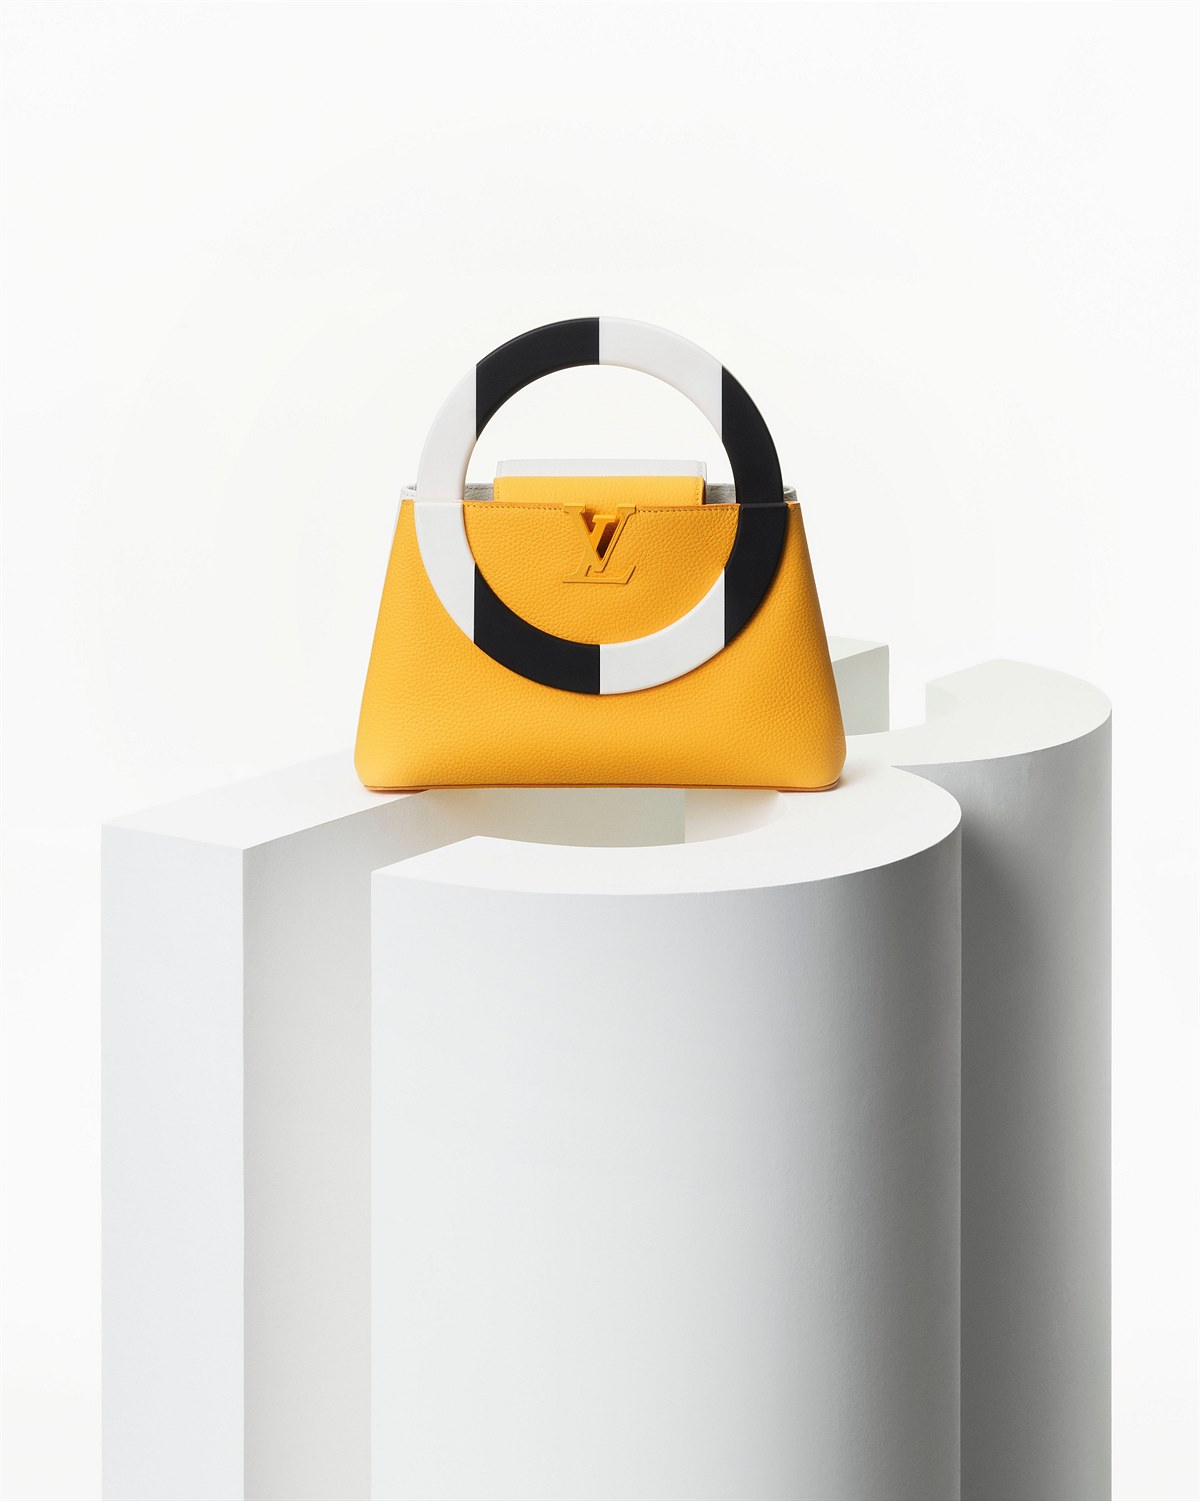 Louis Vuitton Artycapucines 2022_Chapter 4_Still life_Daniel Buren_Yellow